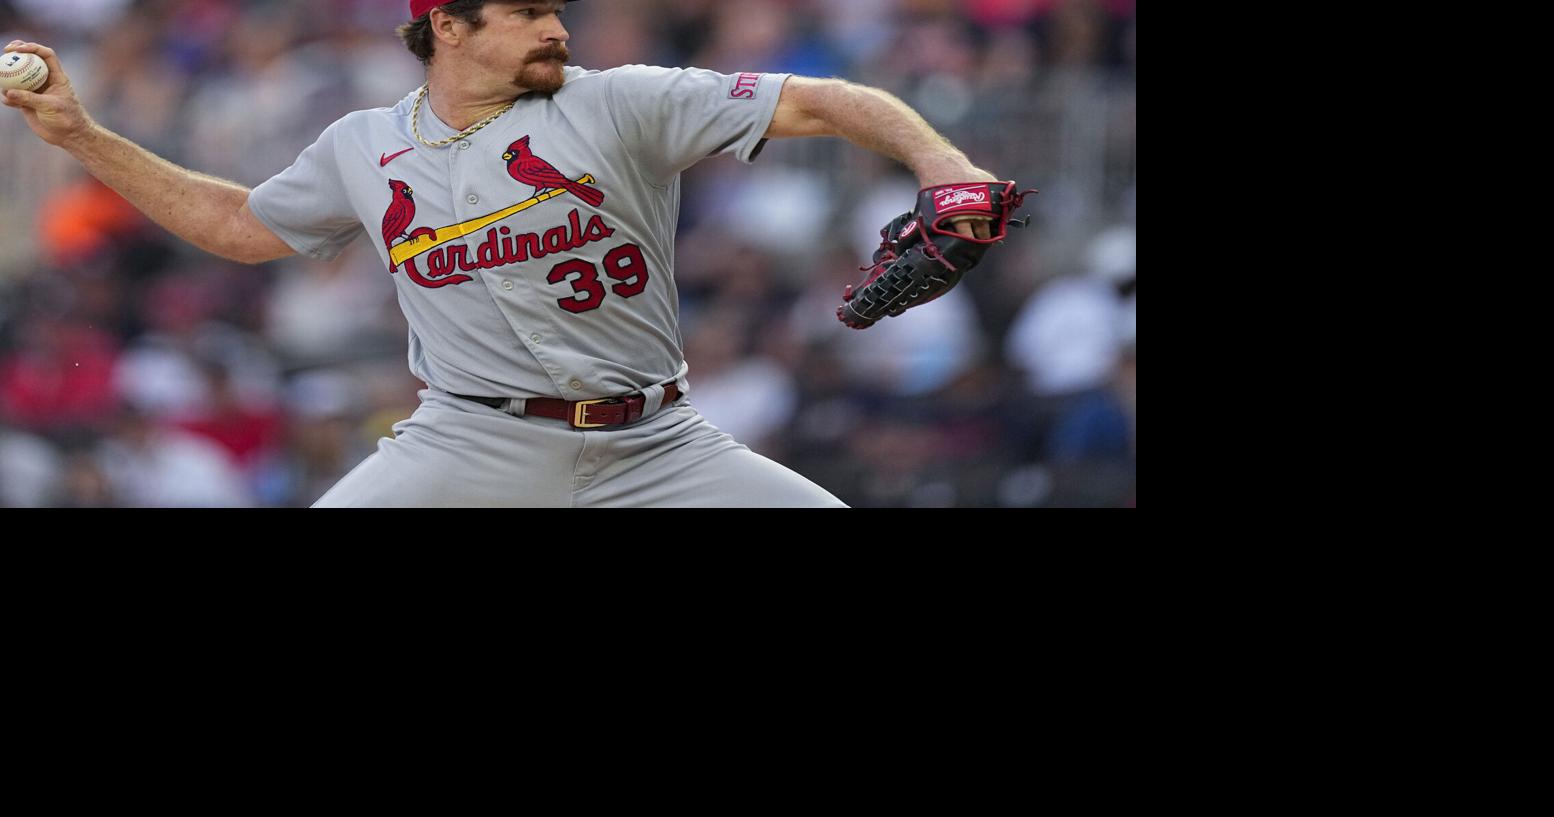 3-6 Months St. Louis Cardinals MLB Fan Apparel & Souvenirs for sale